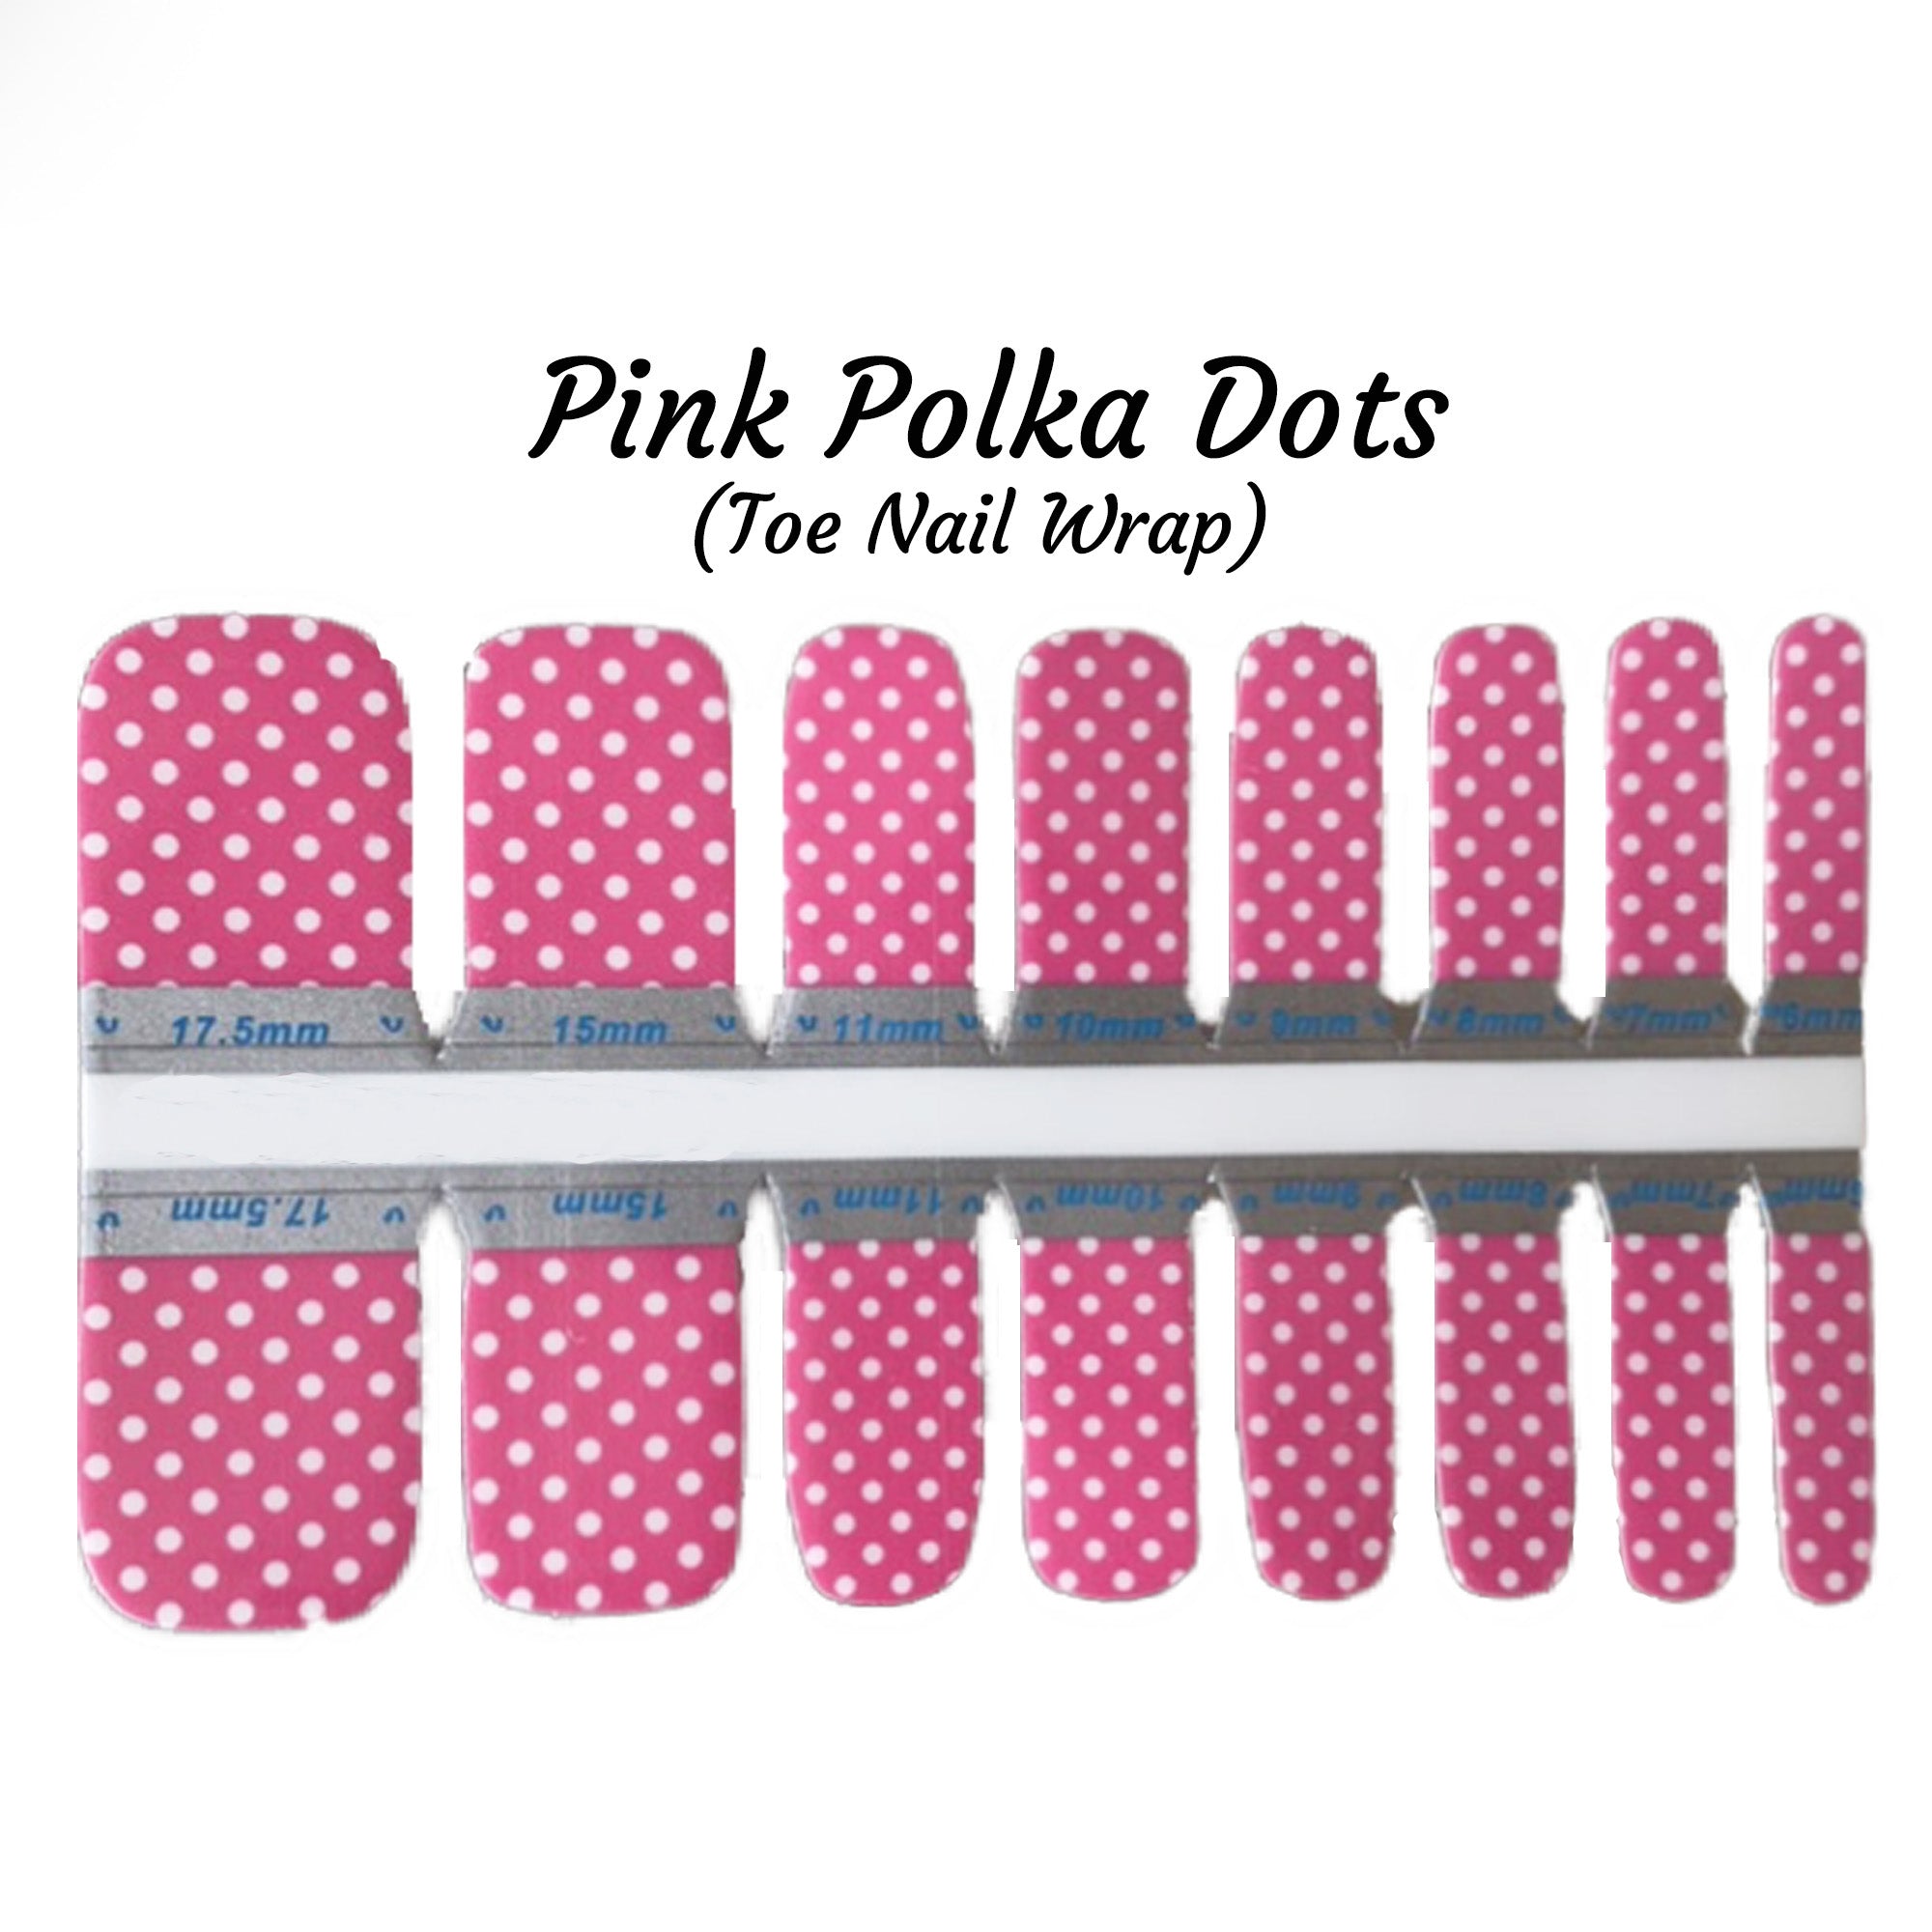 Pink Polka Dots Toe